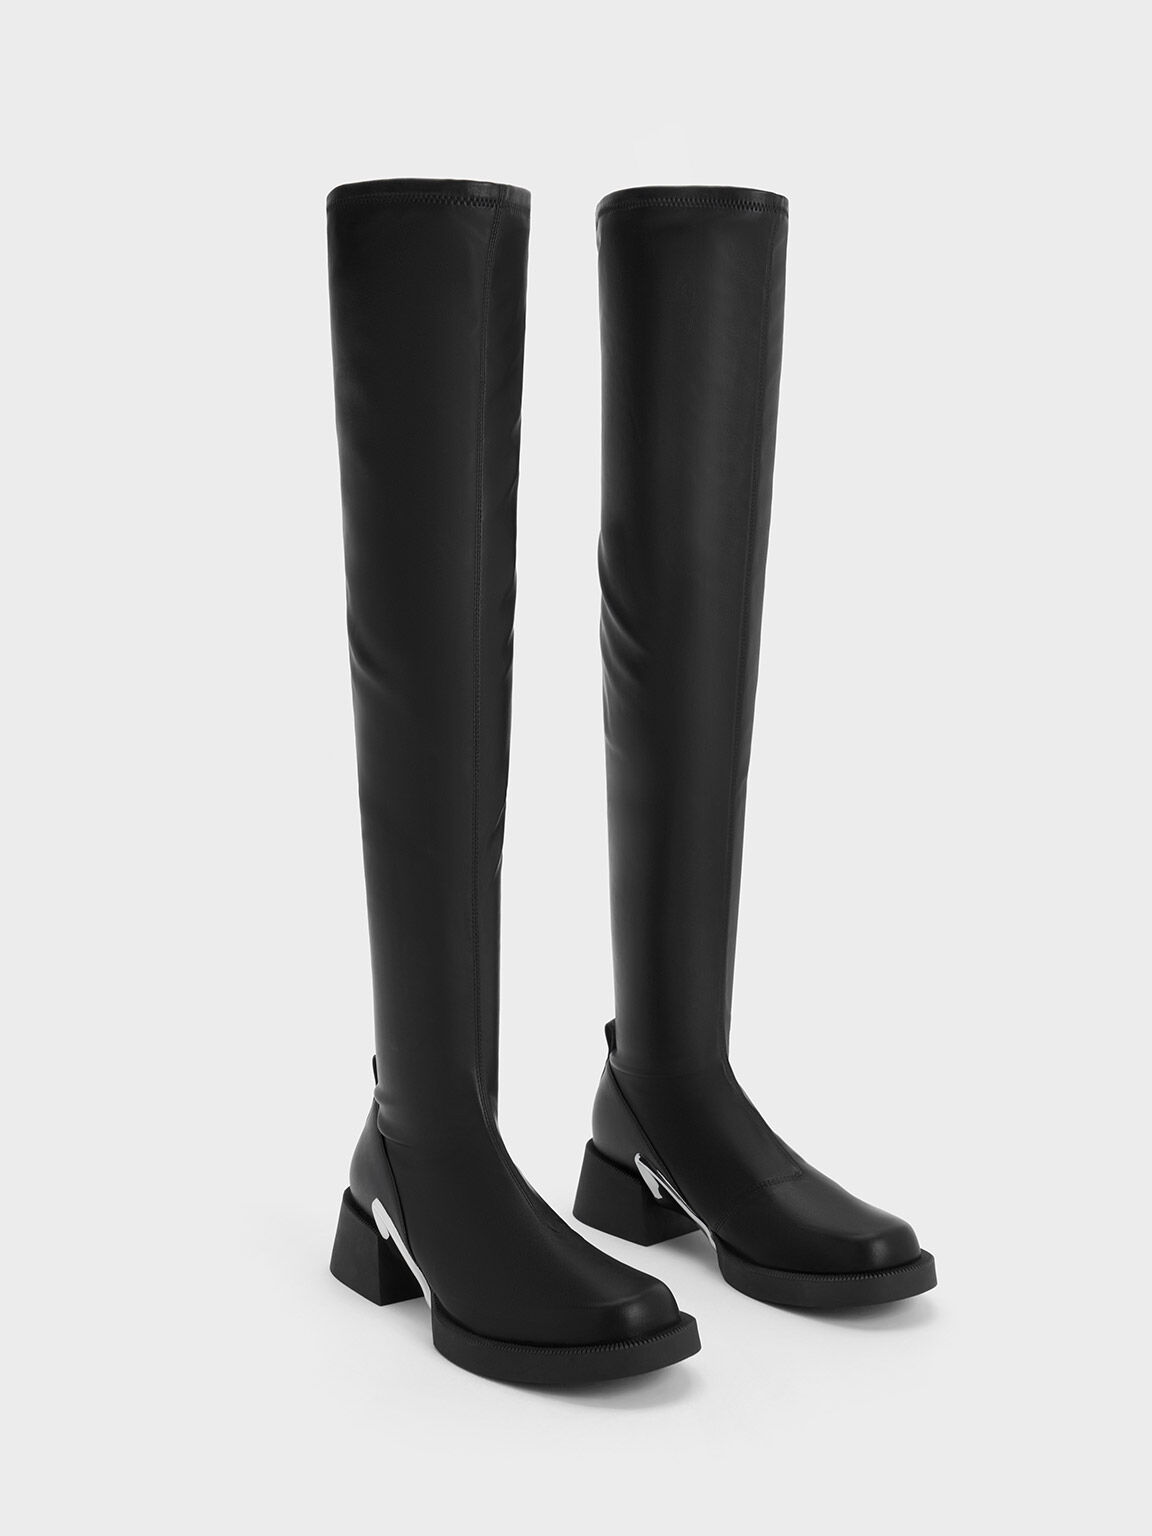 Devon Metallic-Accent Thigh-High Boots - Black